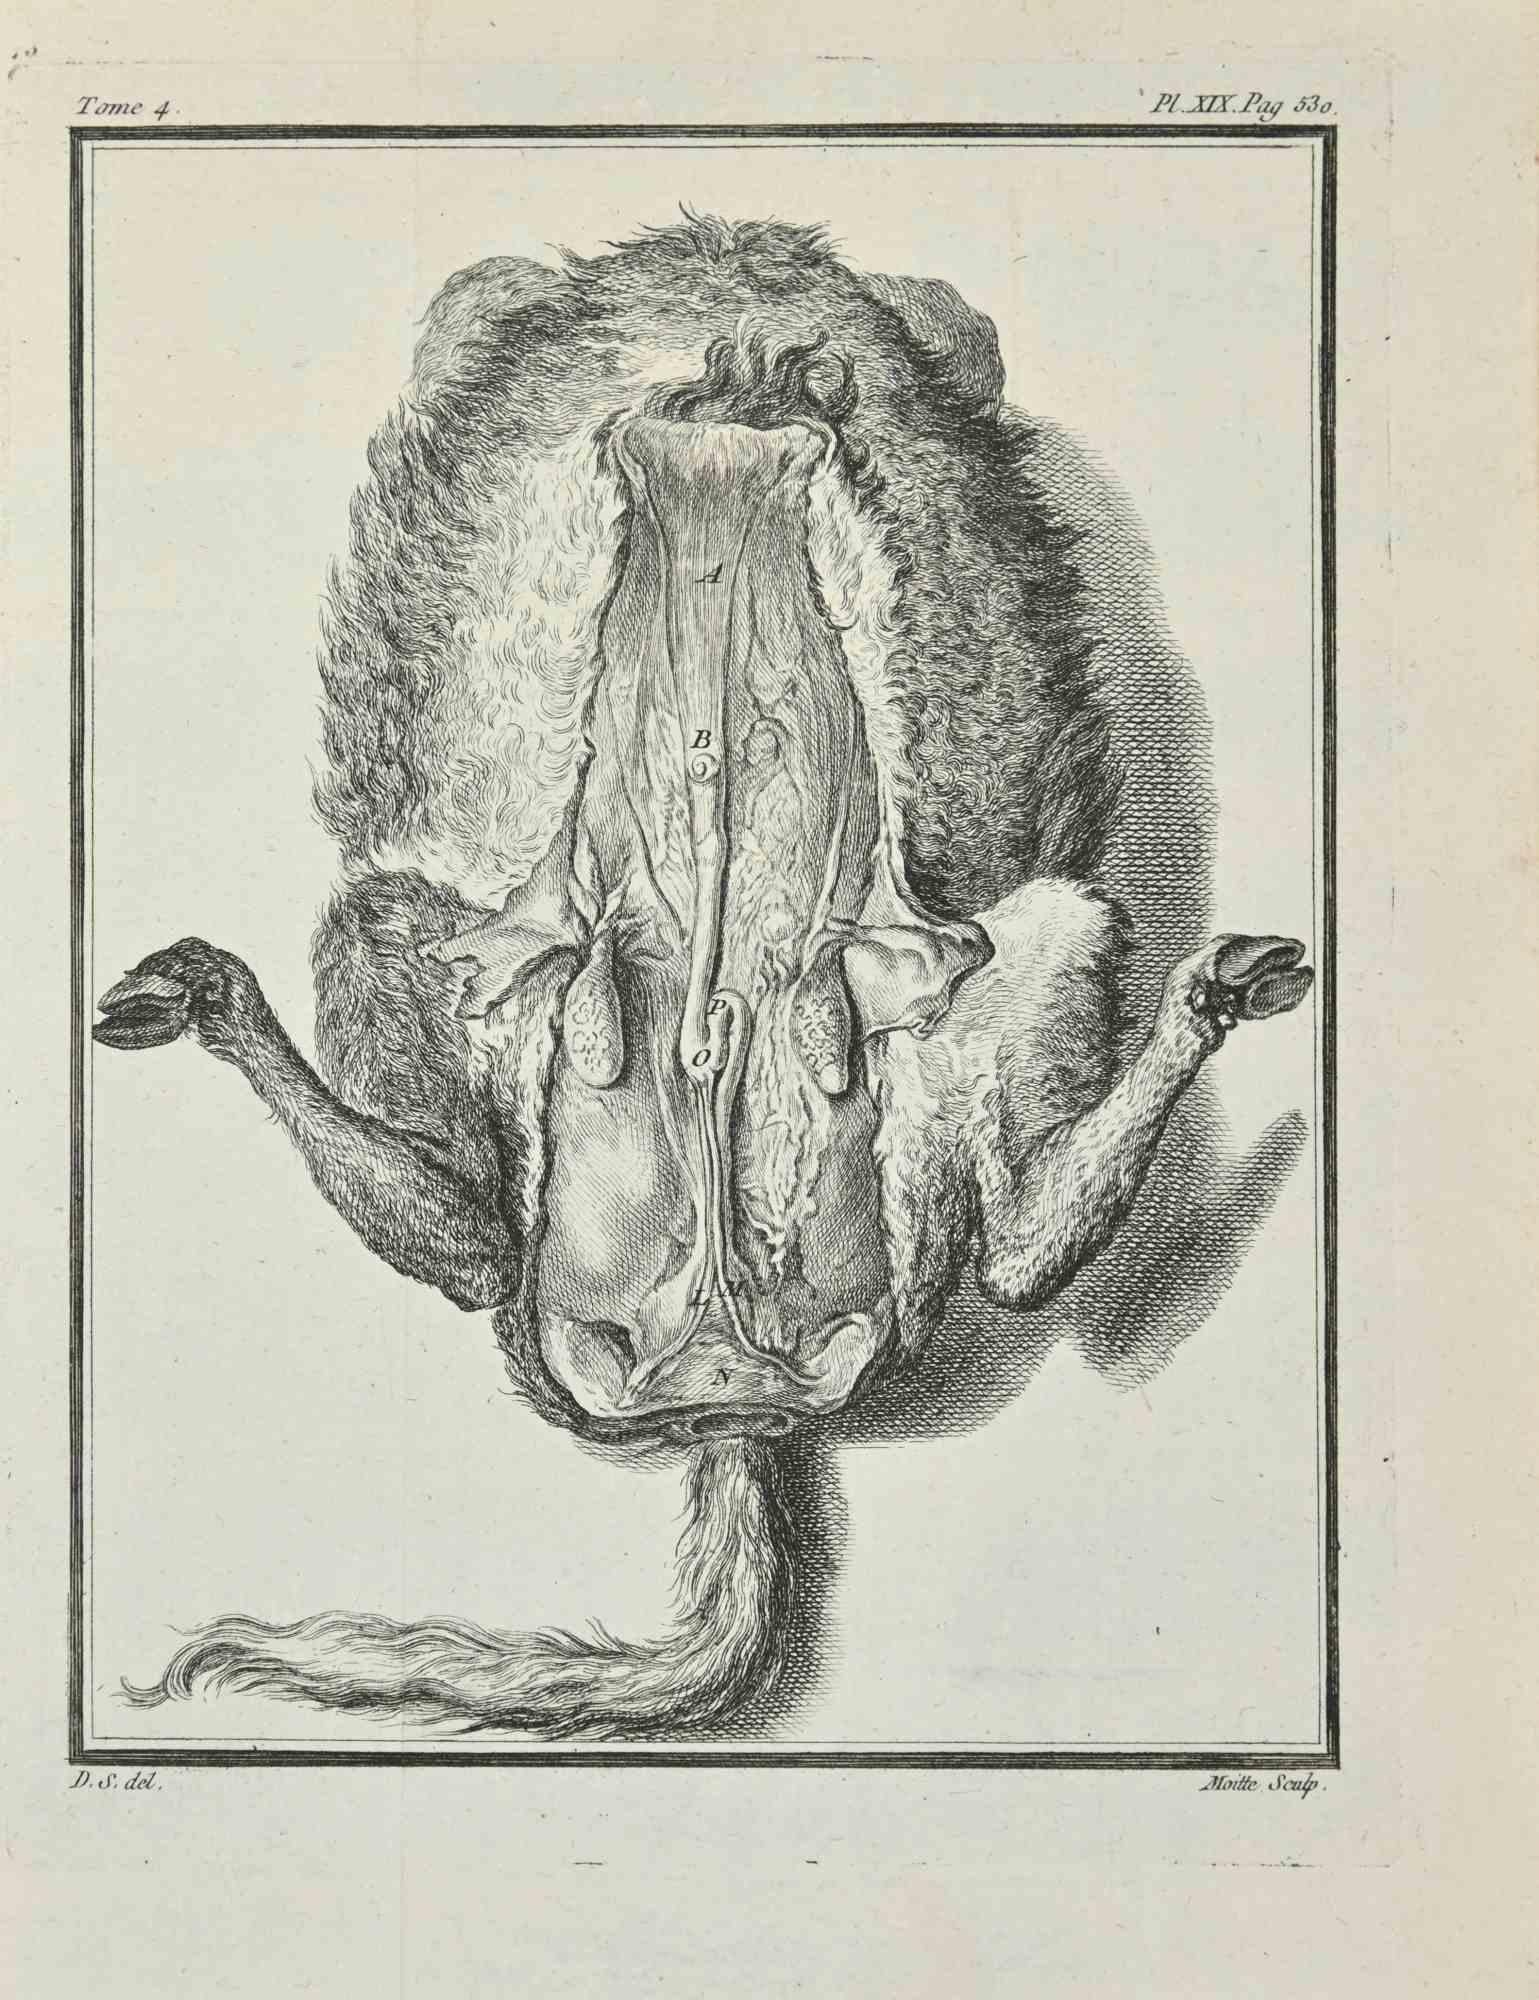 L'Anatomie des animaux est une gravure réalisée par Jean Gullaume Moitte en 1771.

L'oeuvre appartient à la suite "Histoire naturelle, générale et particulière avec la description du Cabinet du Roi". Paris : Imprimerie Royale, 1749-1771. La